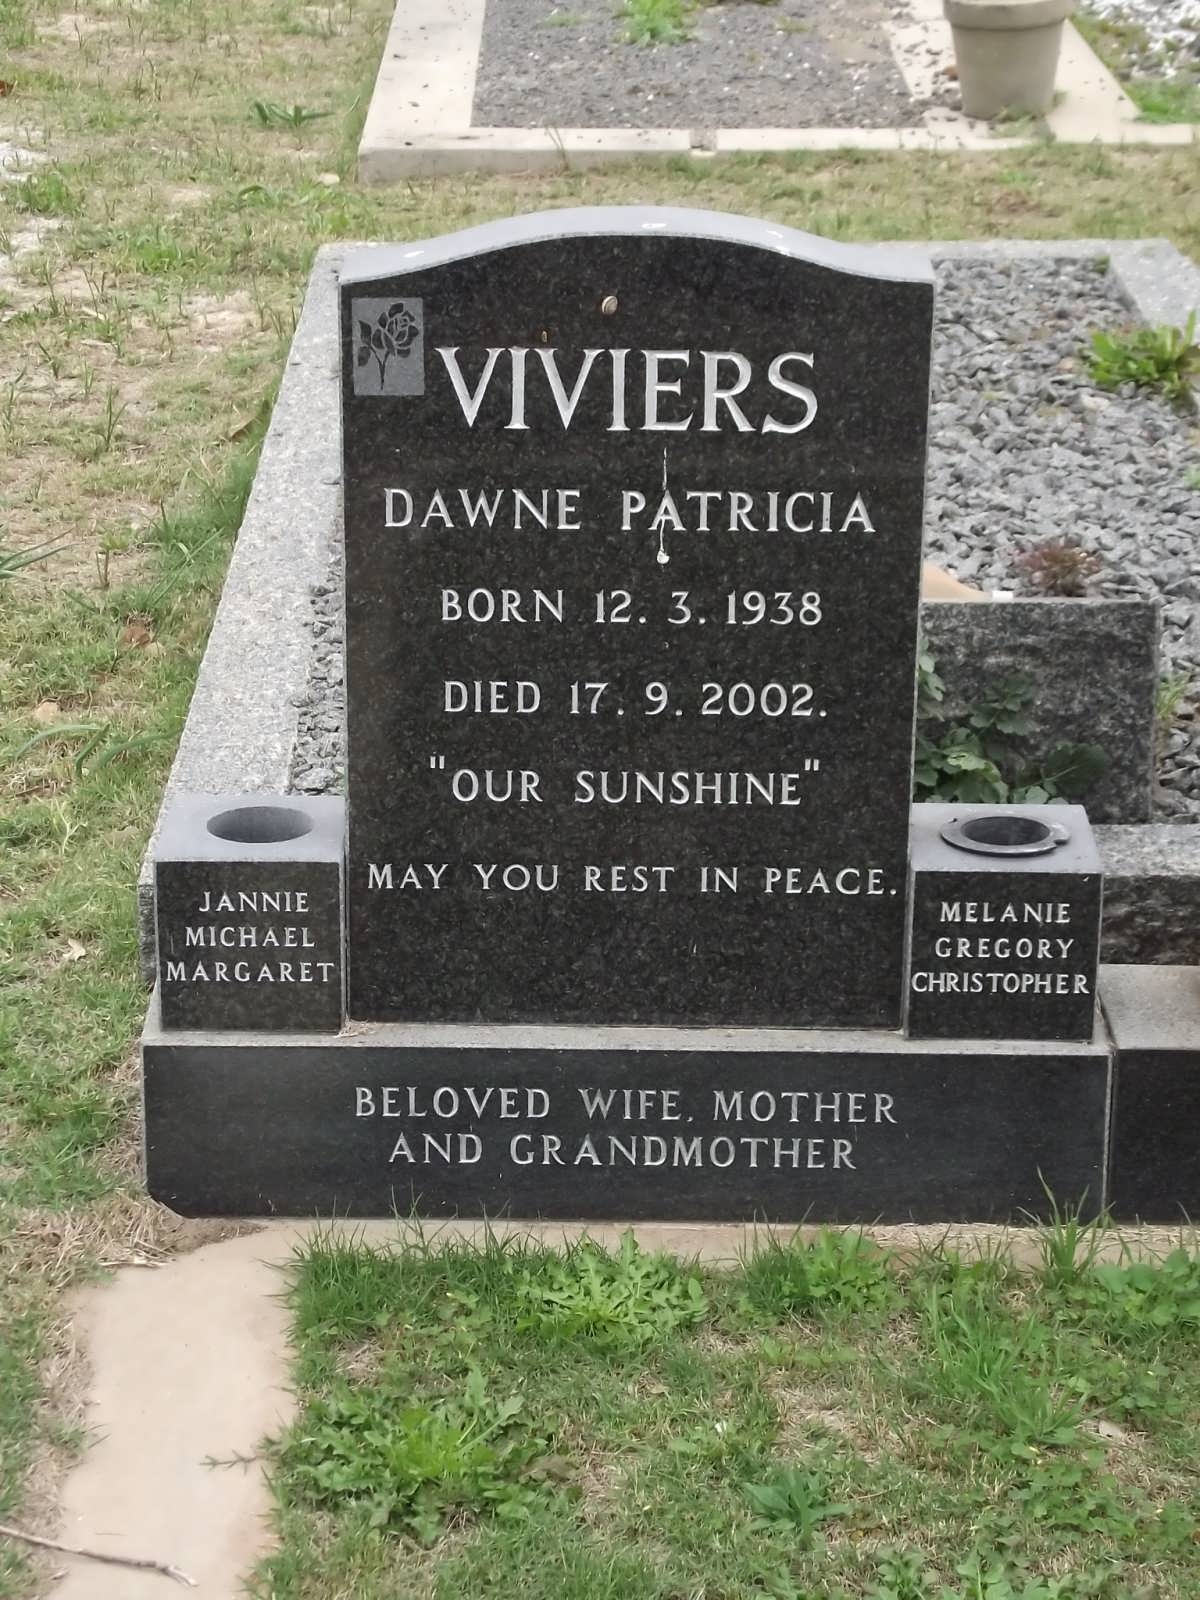 VIVIERS Dawne Patricia 1938-2002